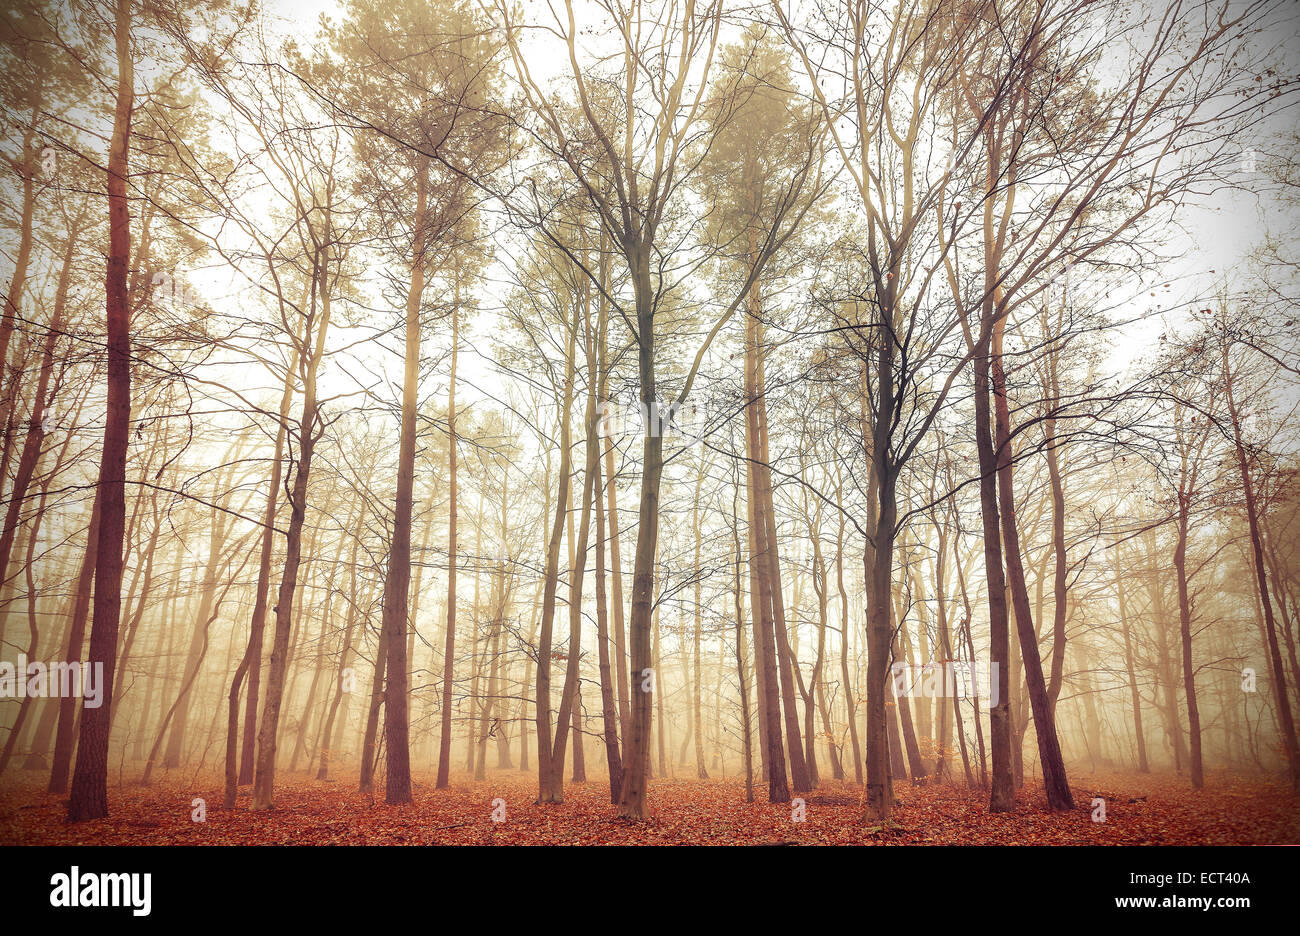 Retrò immagine filtrata di un Bosco nebbioso. Foto Stock